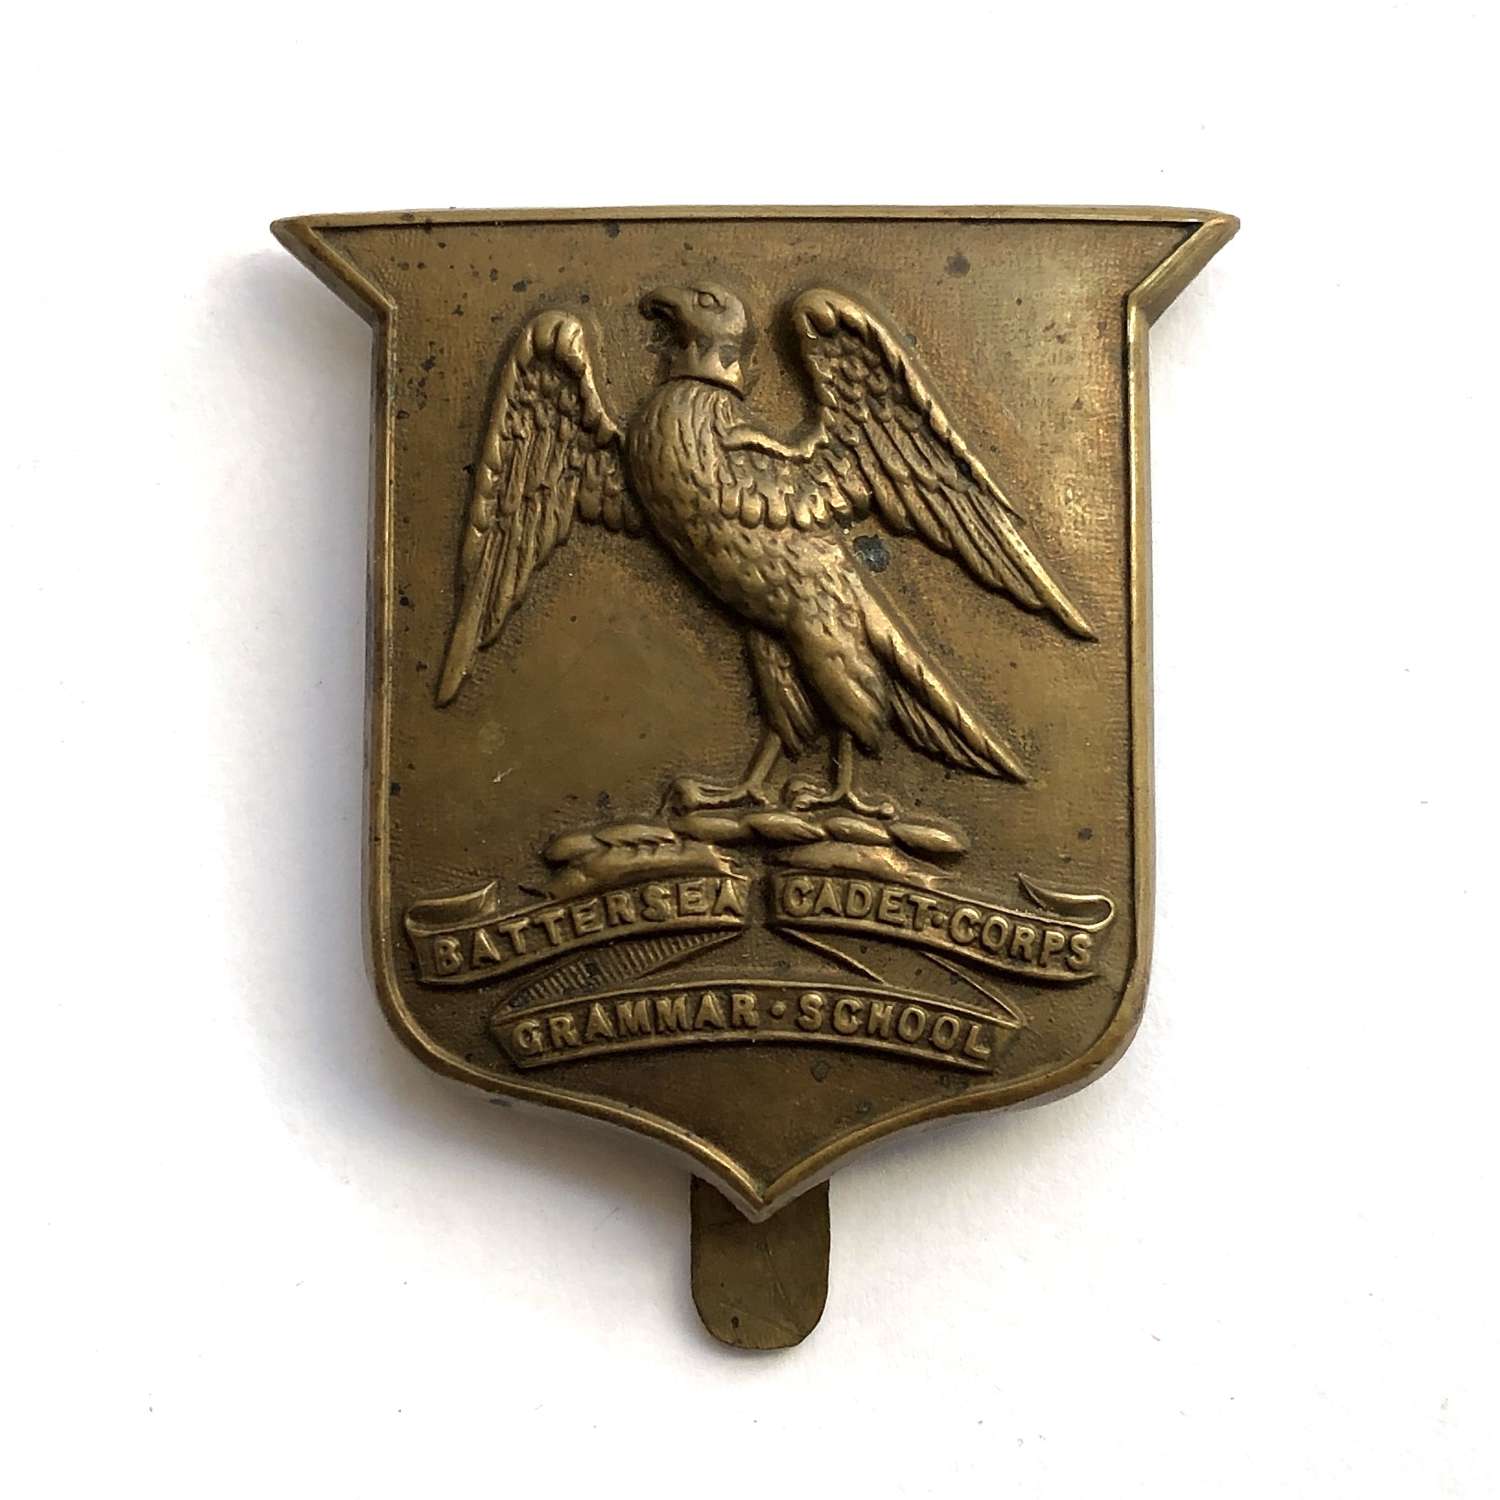 Battersea Grammar School Cadet Corps cap badge